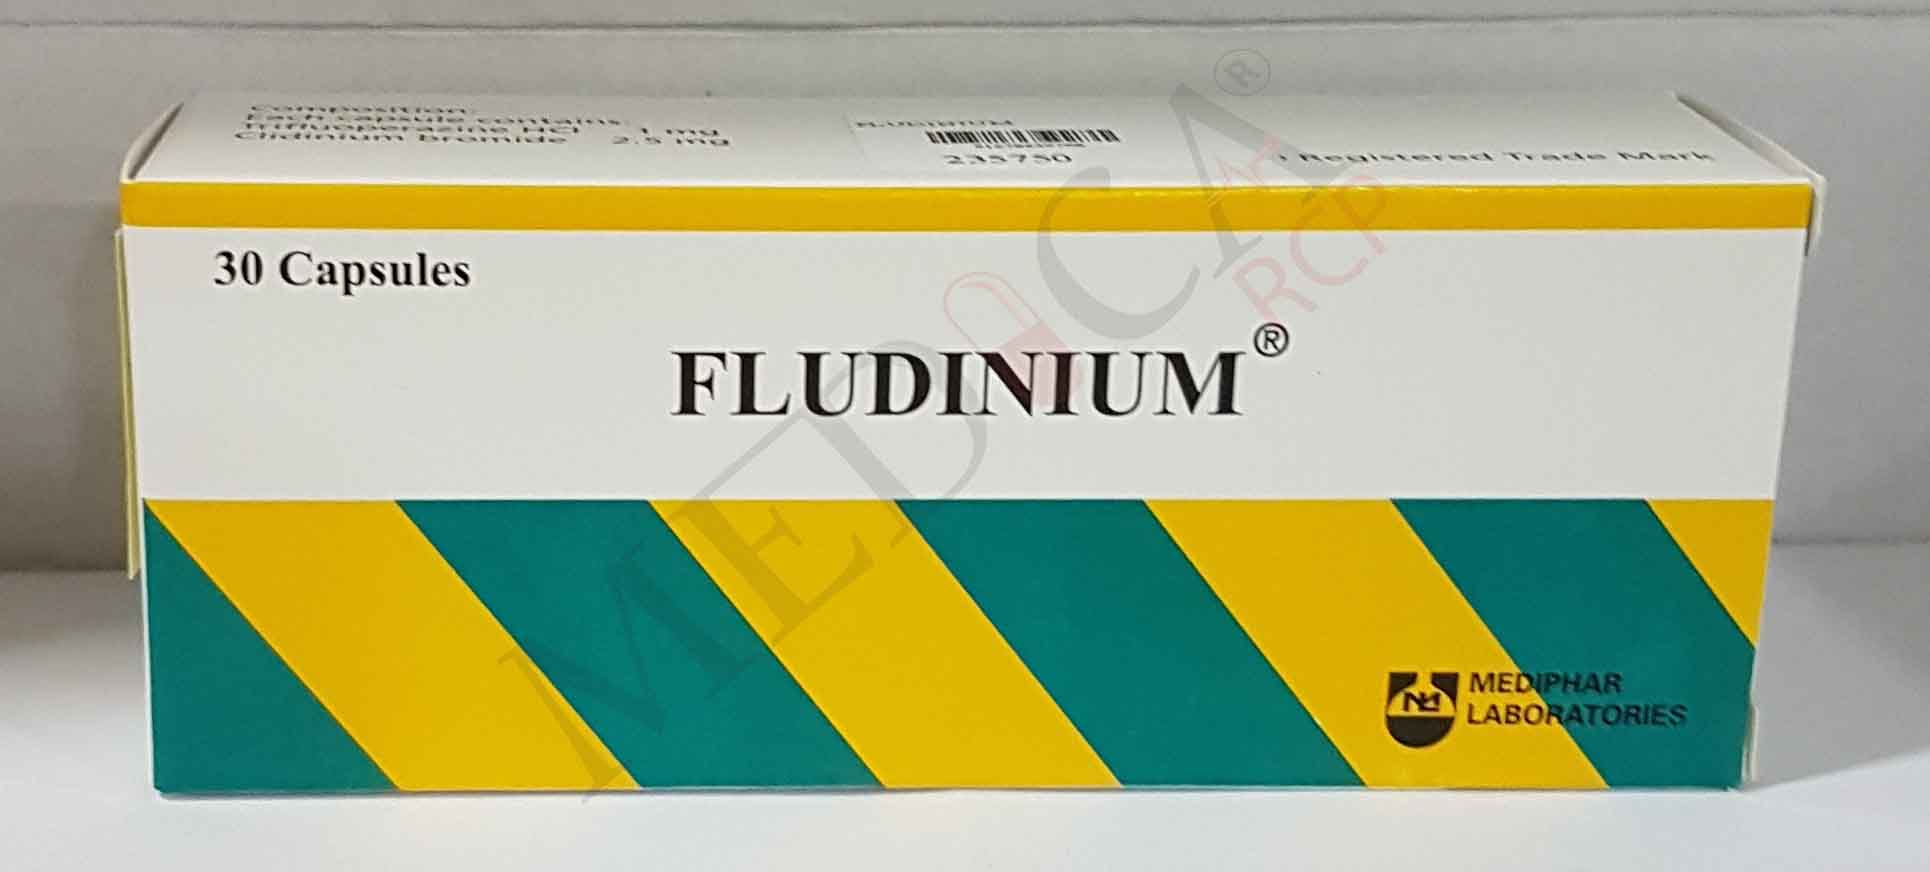 Fludinium - image 0